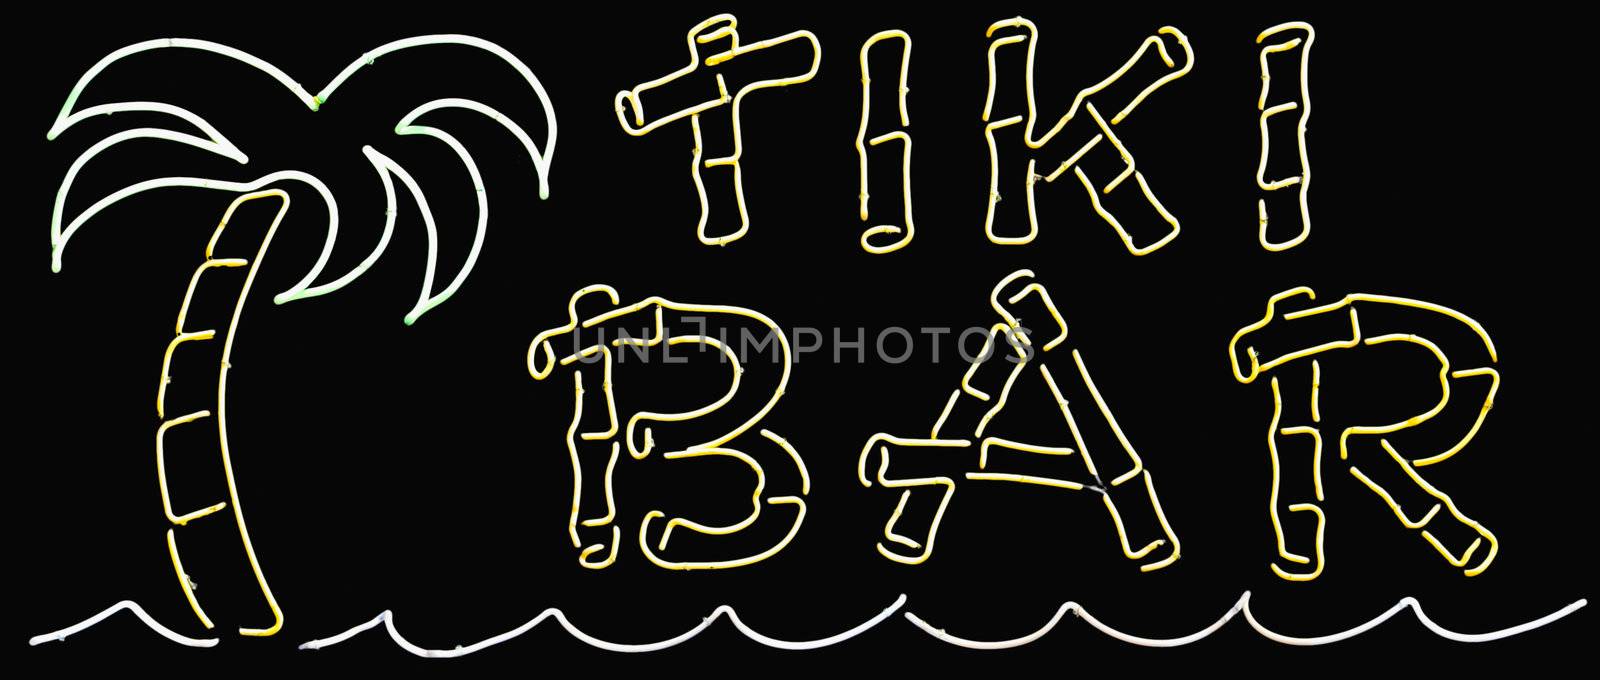 Tiki Bar Sign by sbonk